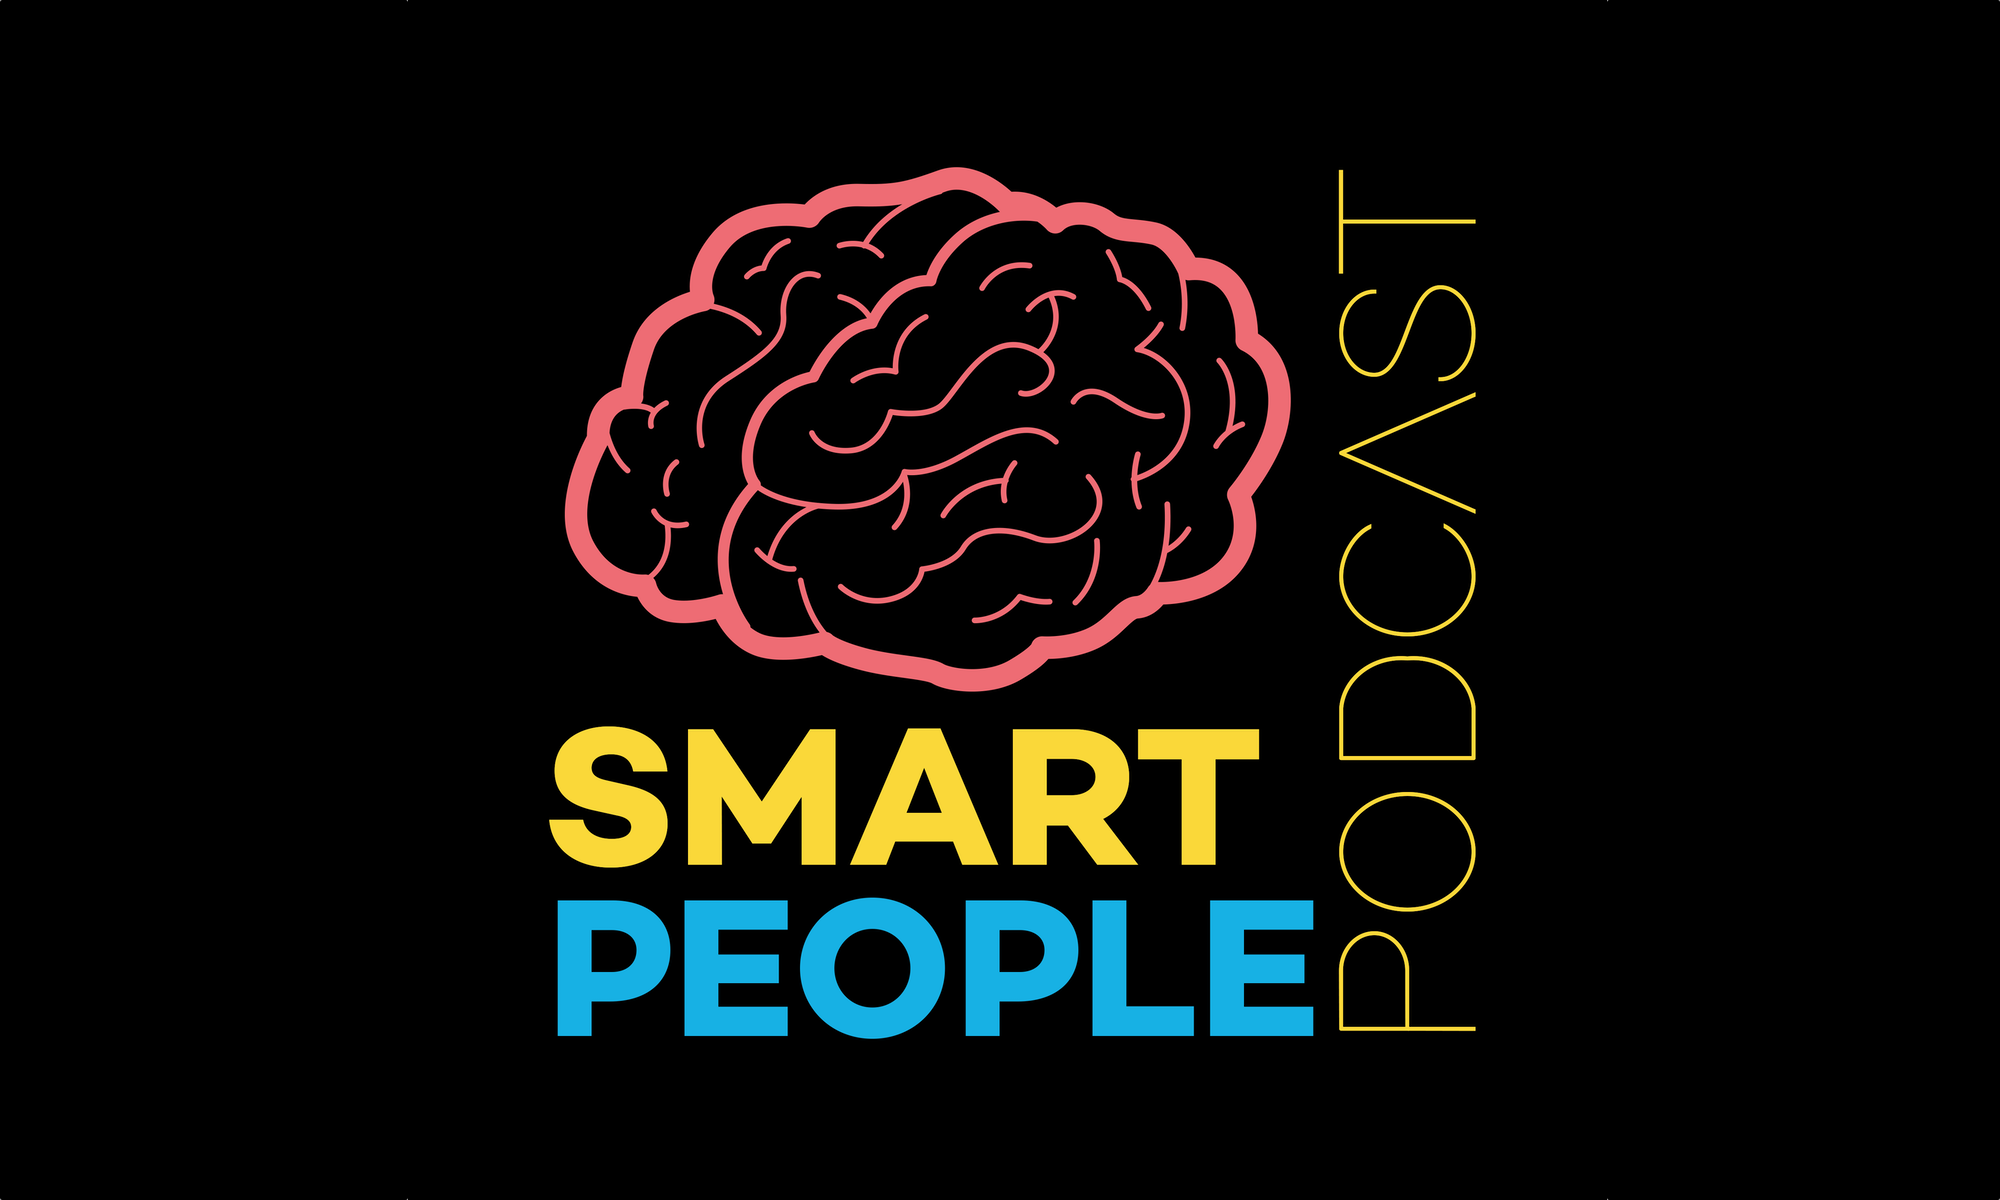 (c) Smartpeoplepodcast.com